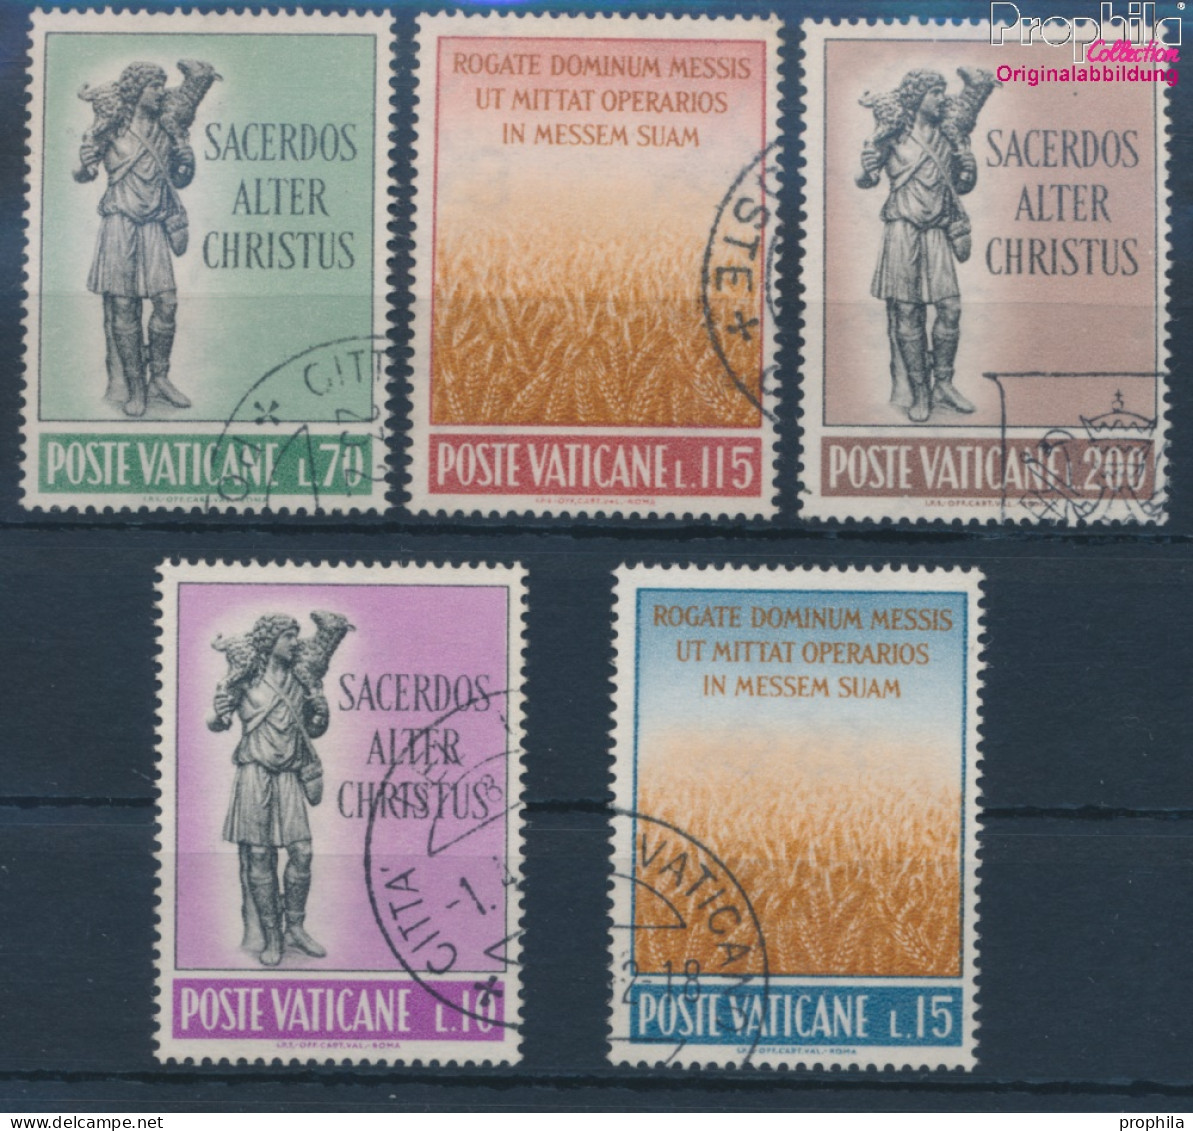 Vatikanstadt 397-401 (kompl.Ausgabe) Gestempelt 1962 Priesterliche Berufung (10352134 - Used Stamps